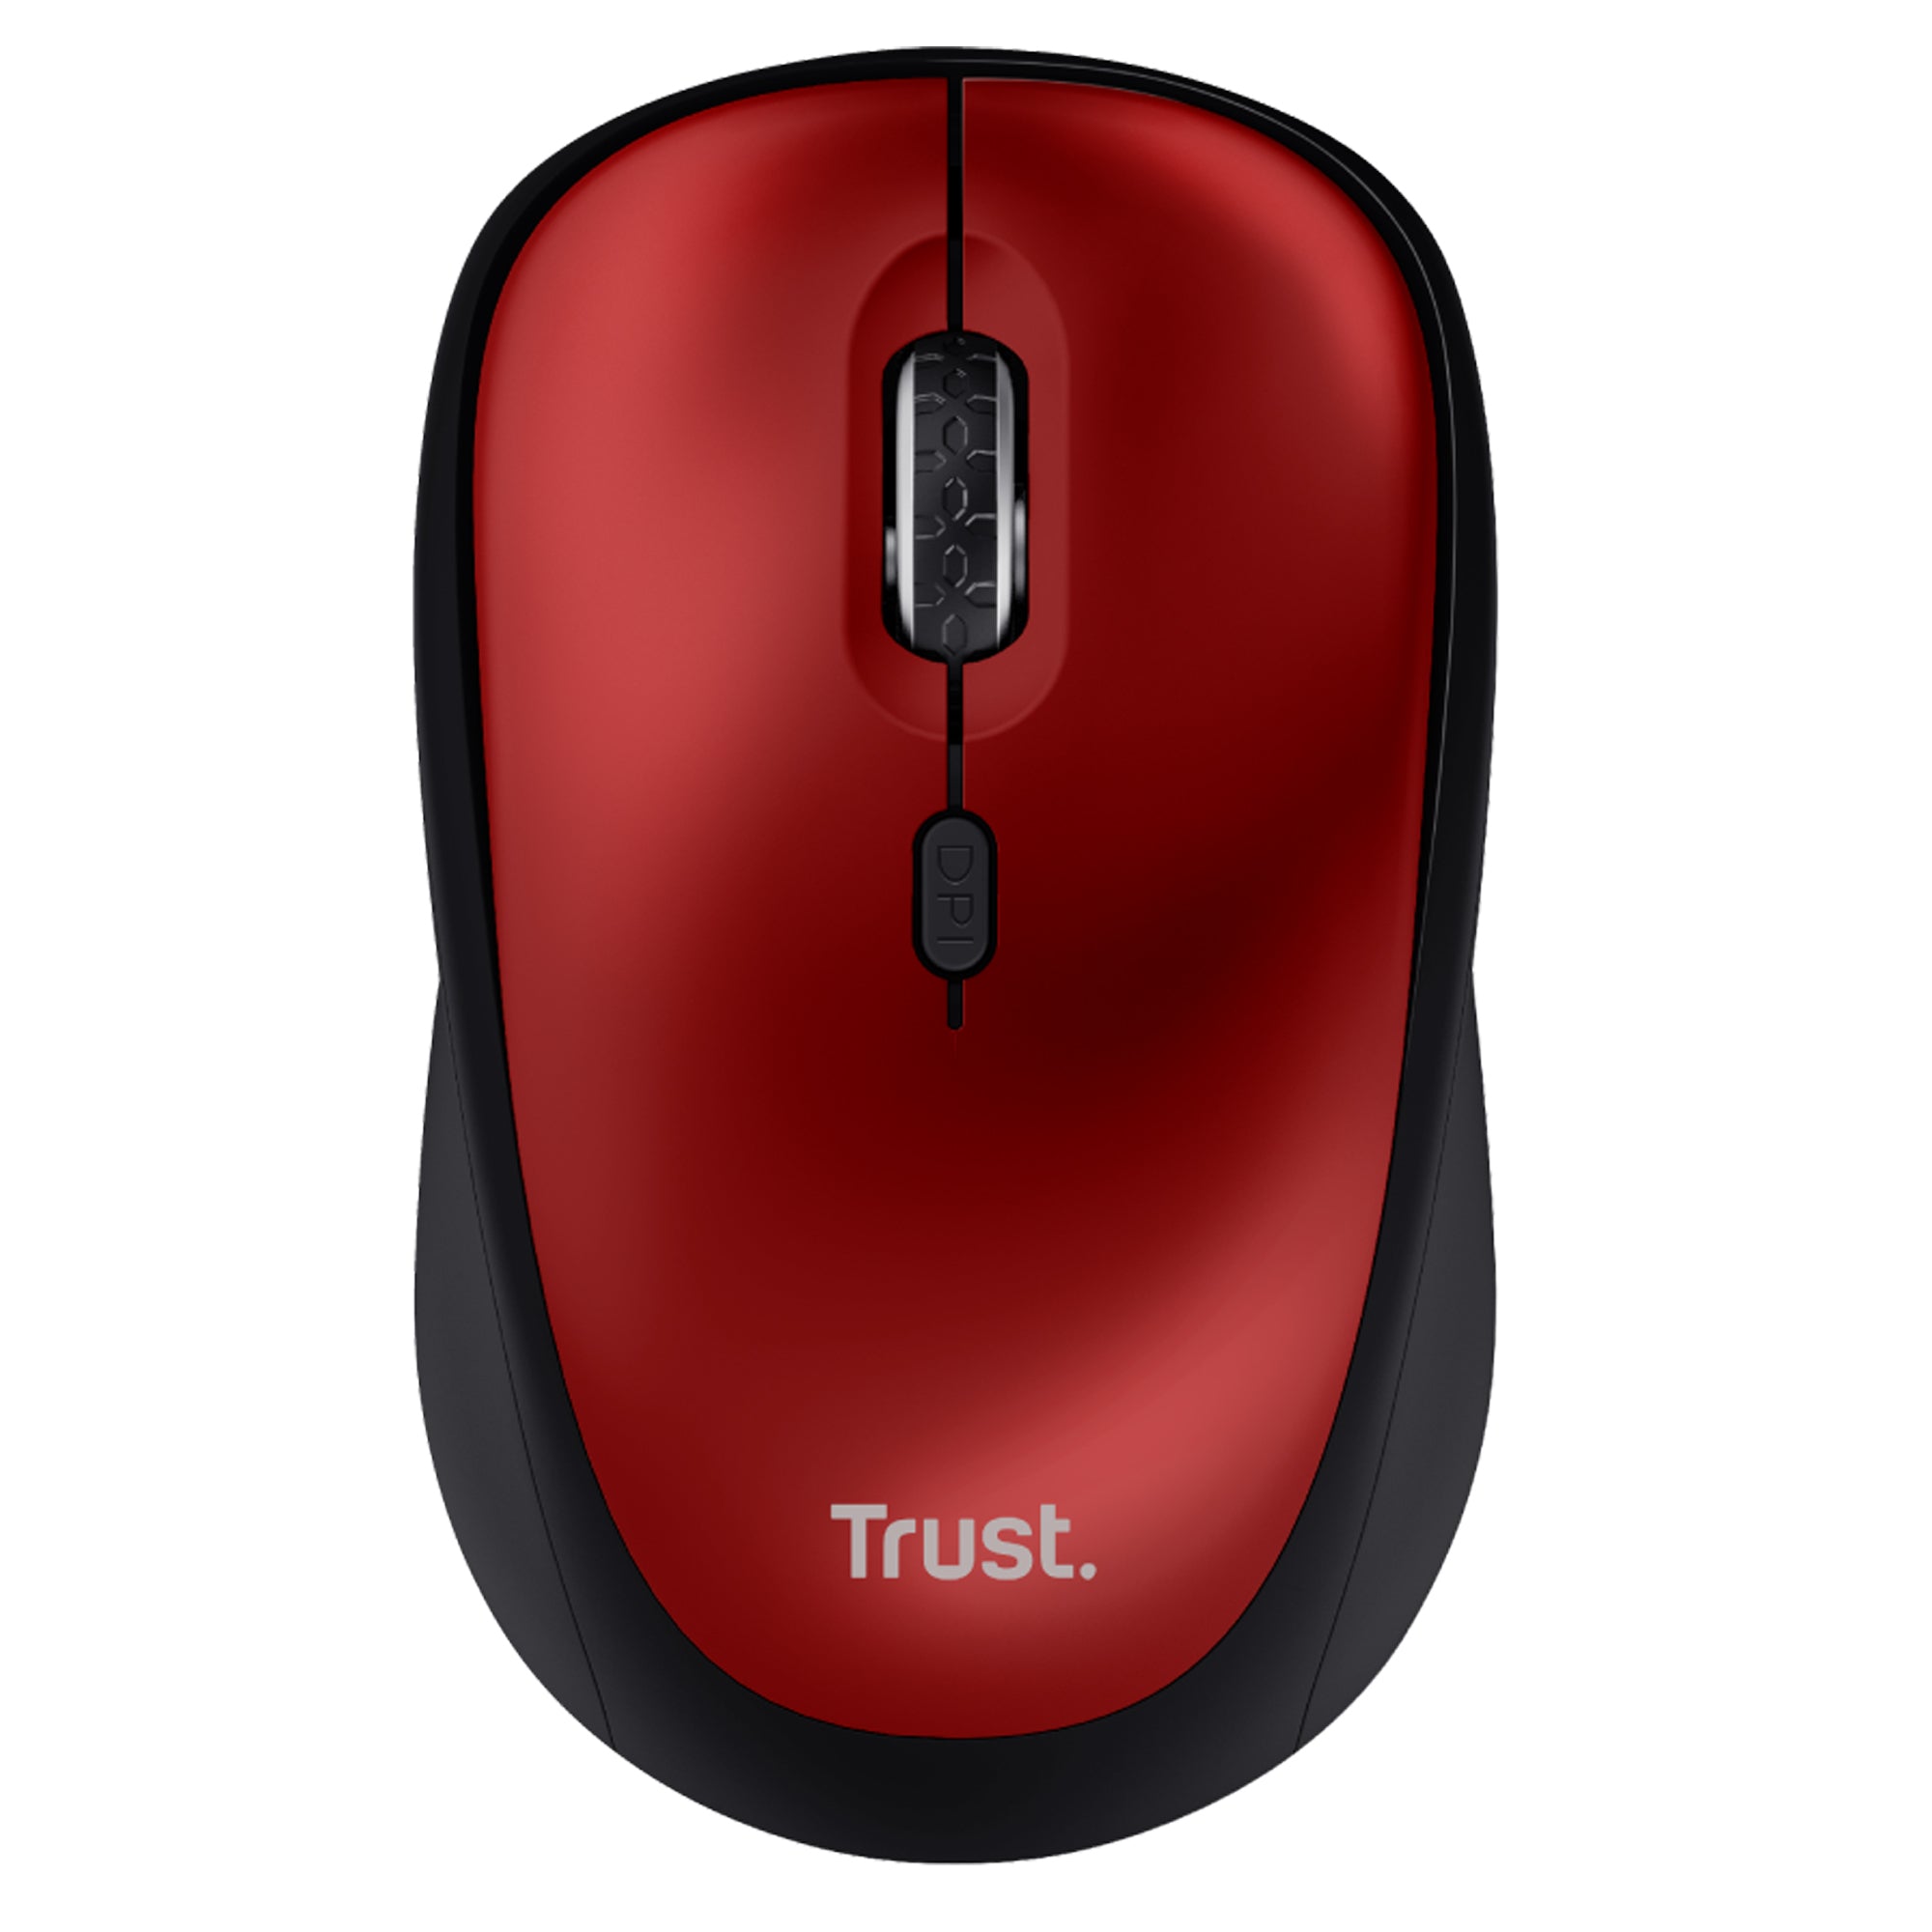 trust-mouse-wireless-silenzioso-yvi-rosso-